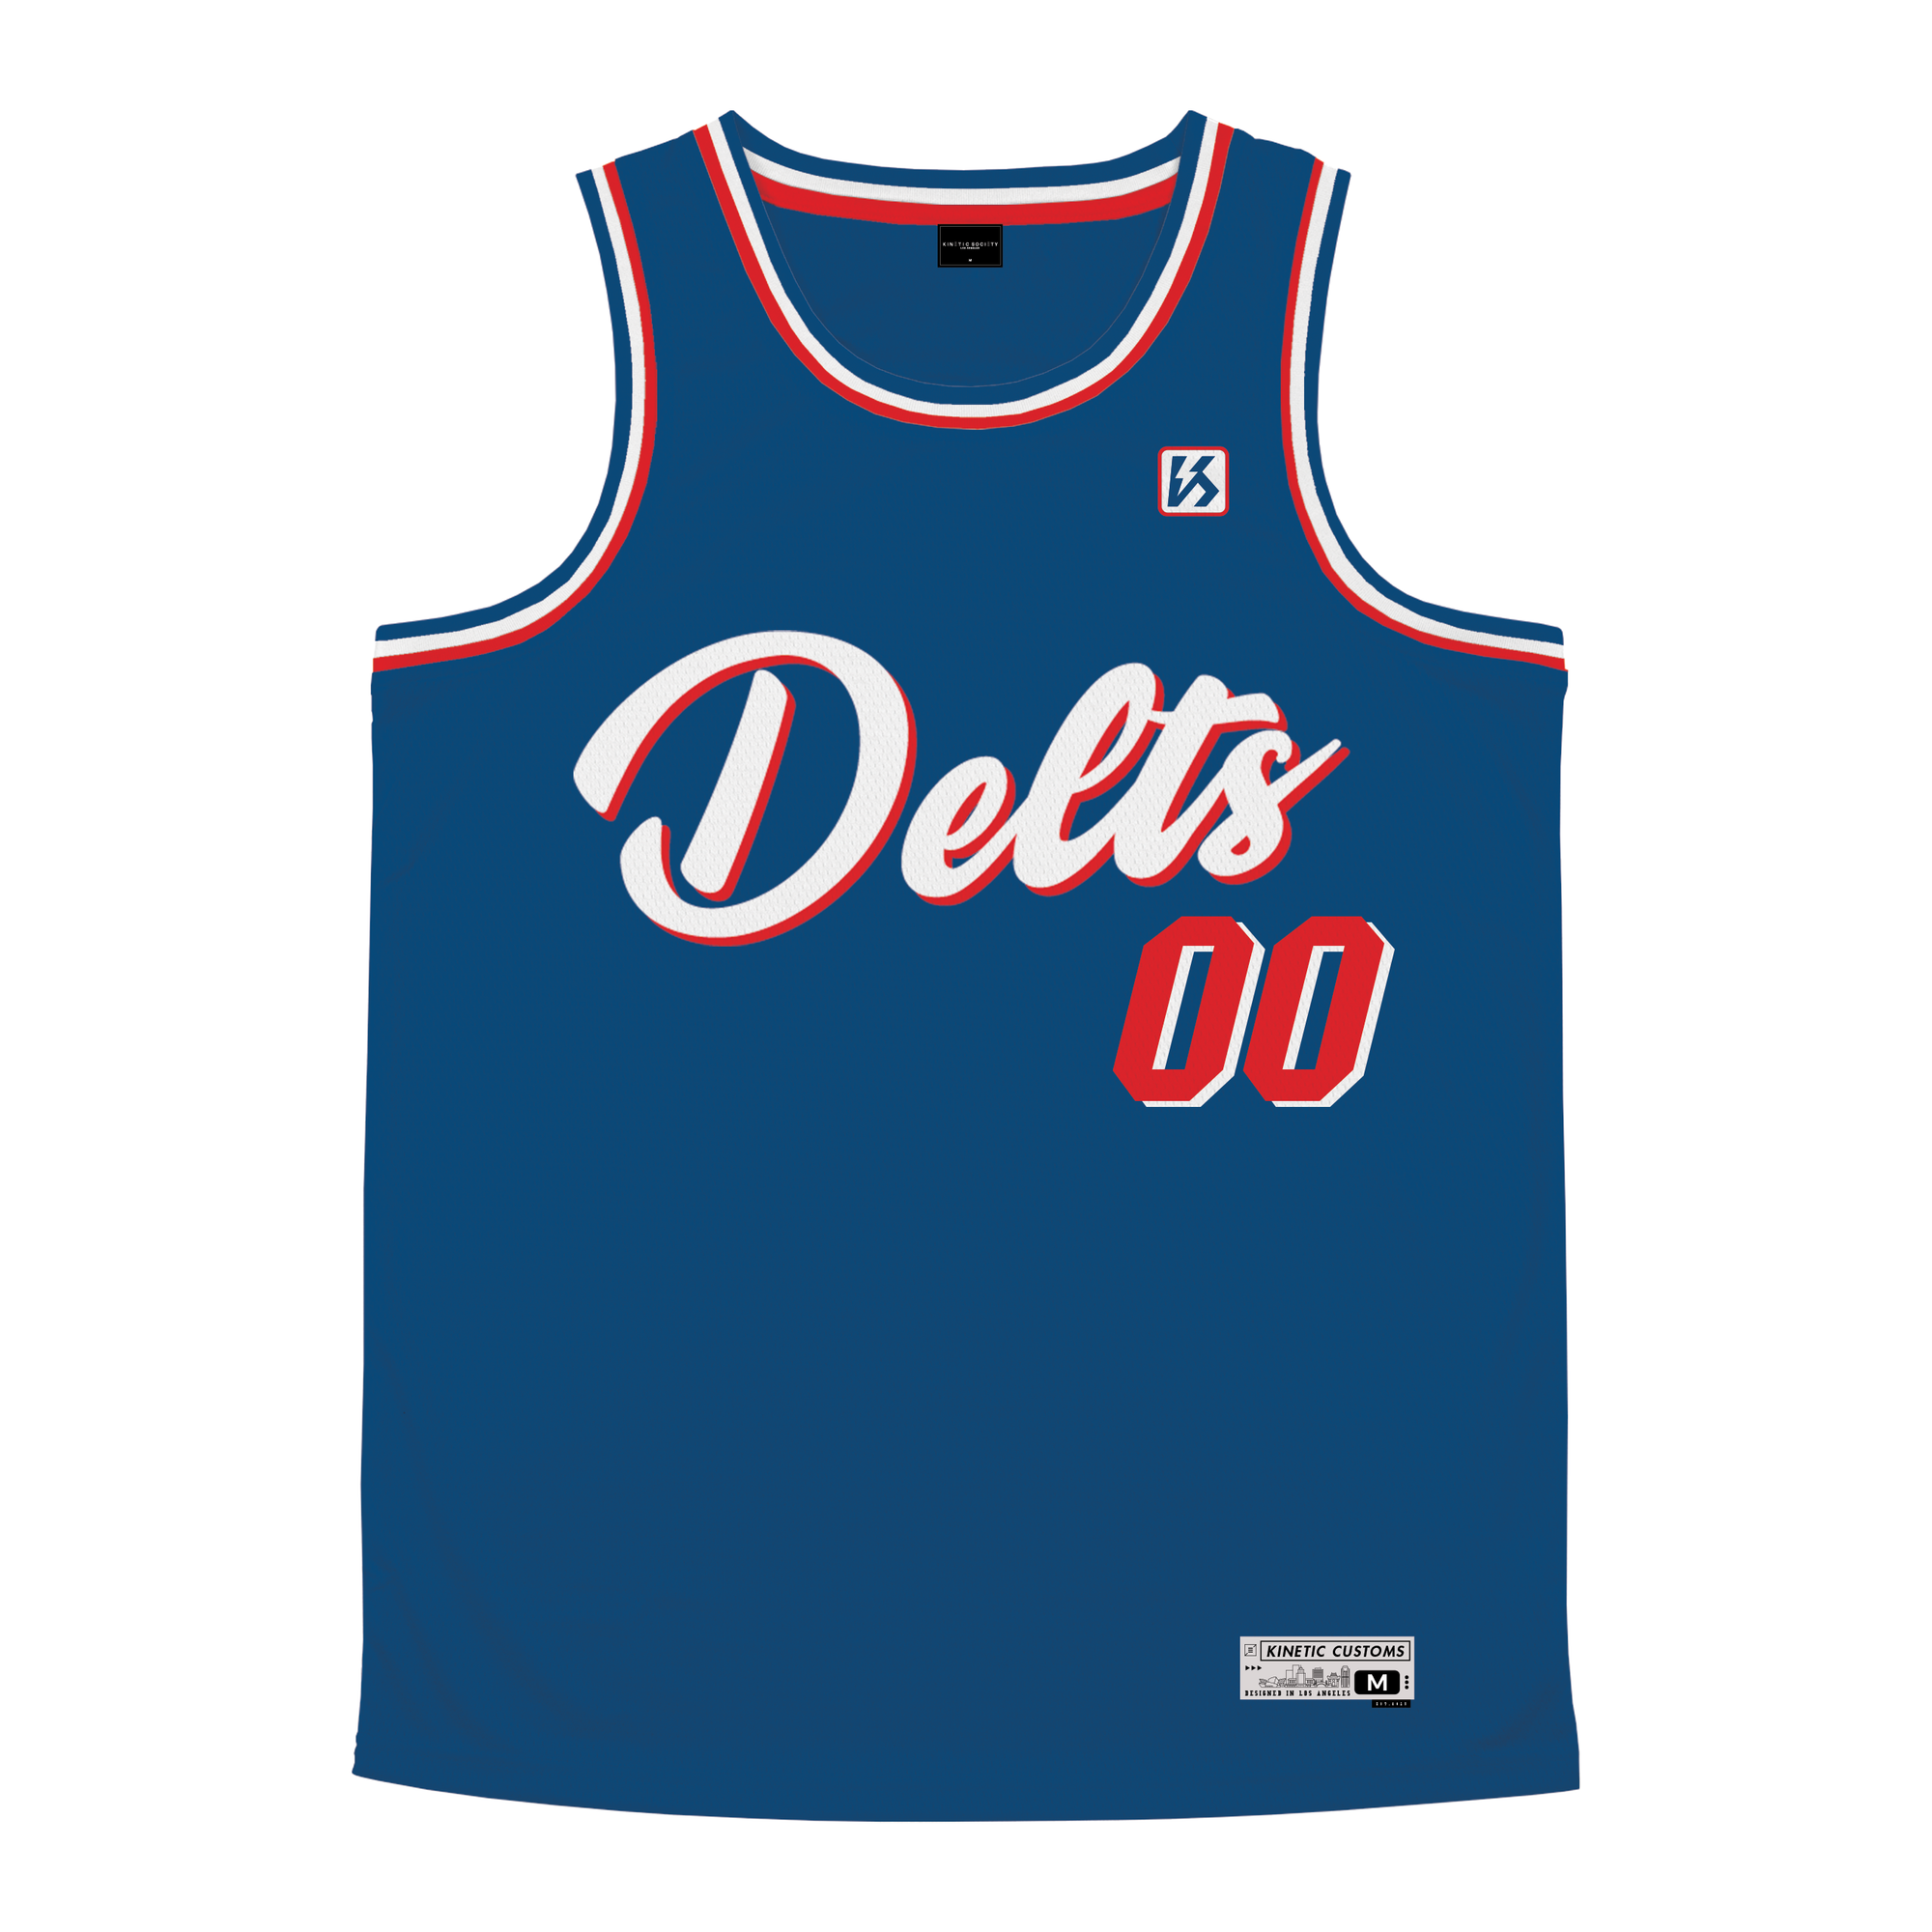 Delta Tau Delta - The Dream Basketball Jersey